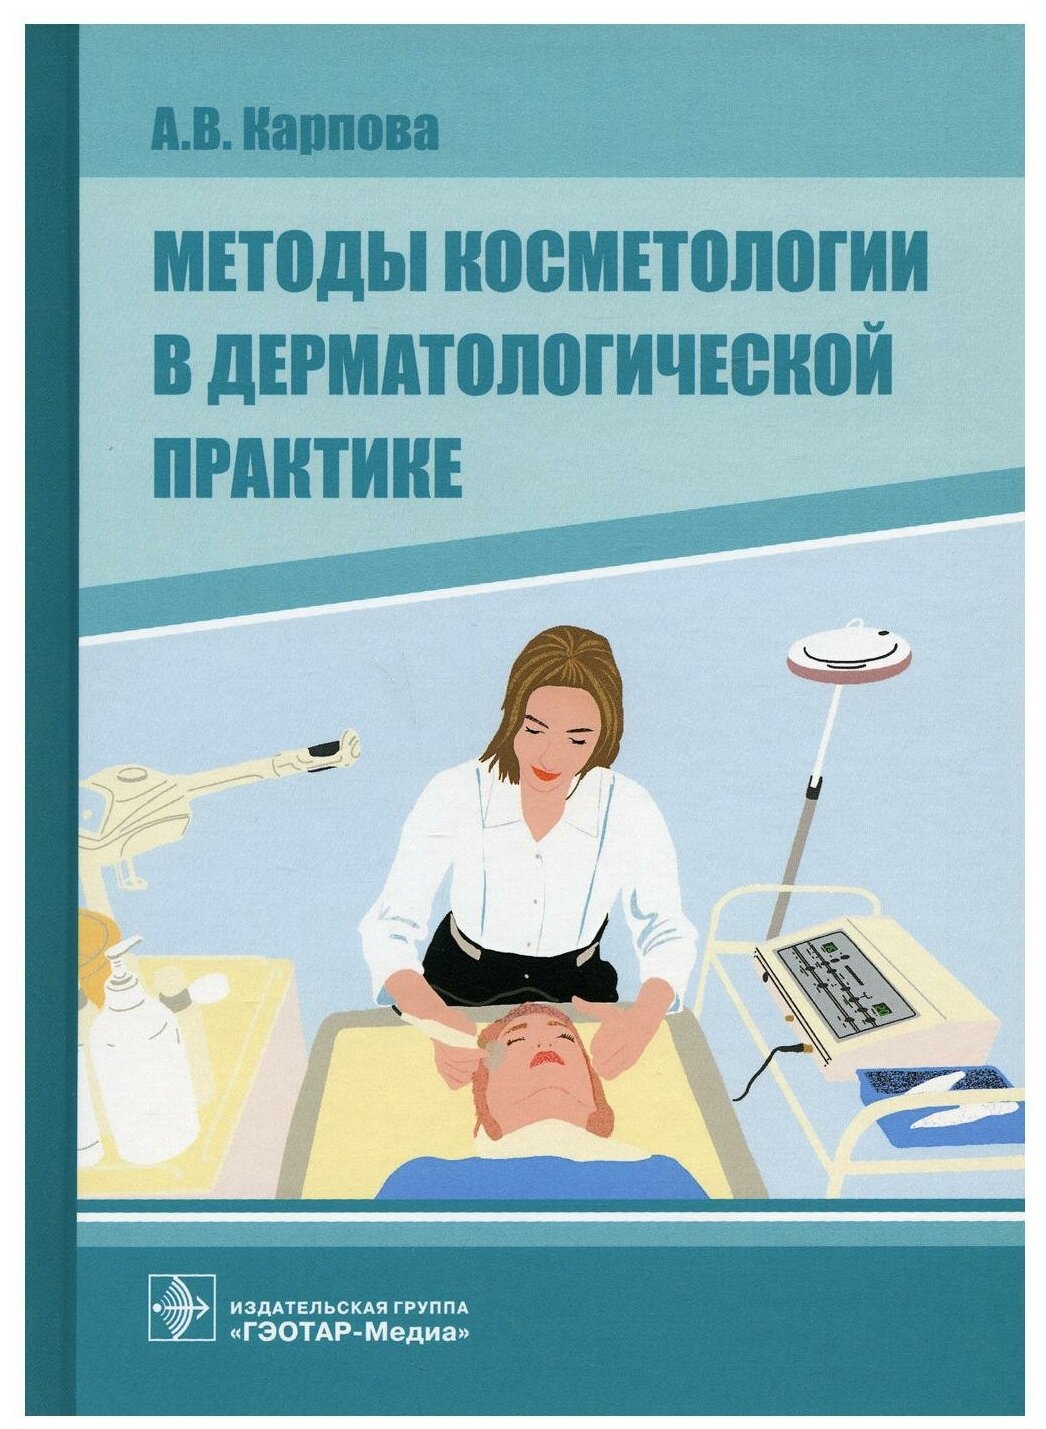 Методы косметологии в дерматологической практике - фото №1